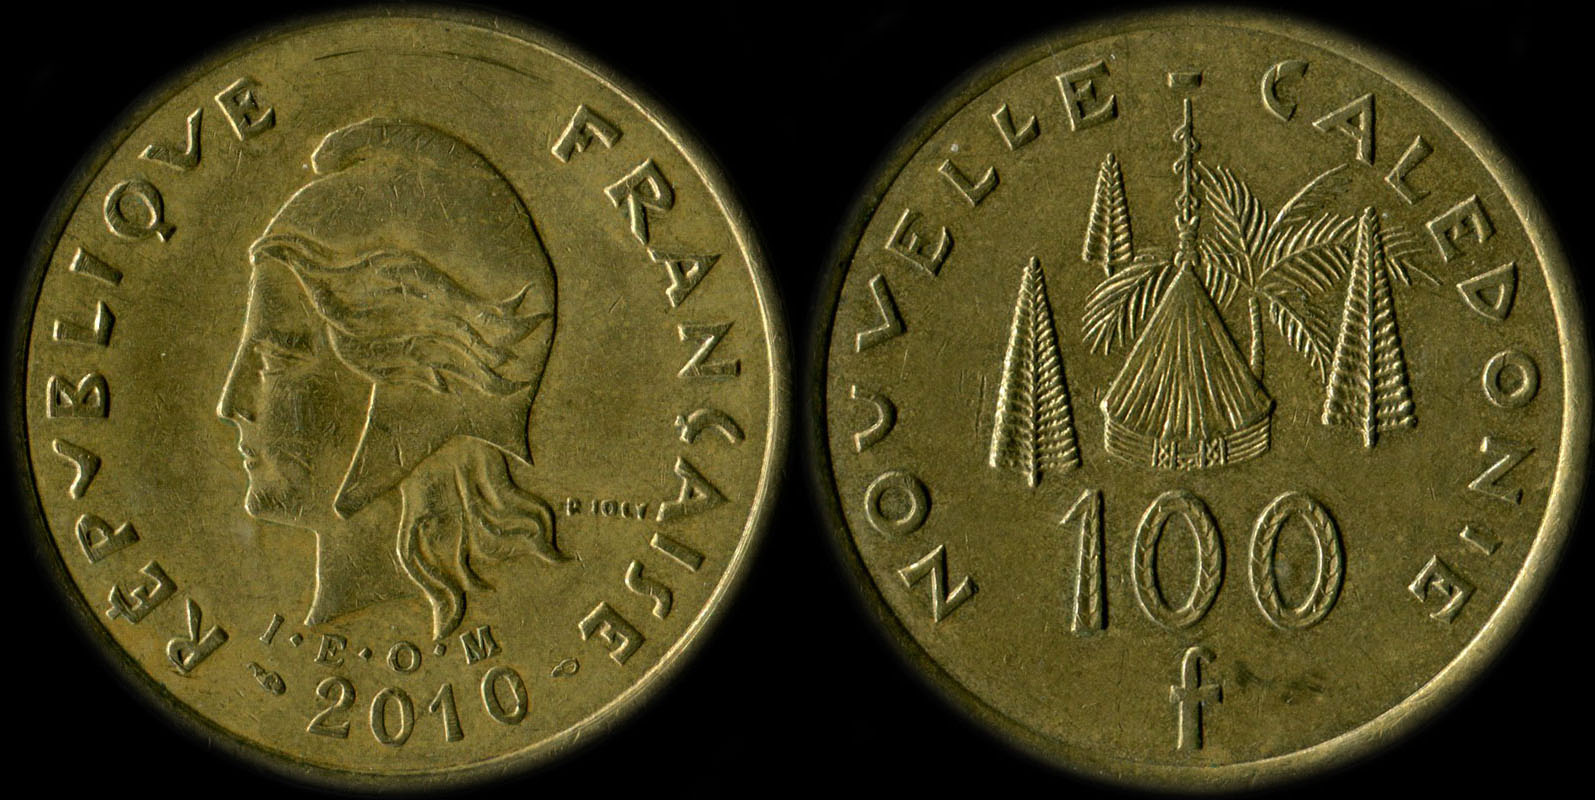 Pièce de 100 francs 2010 Nouvelle-Calédonie